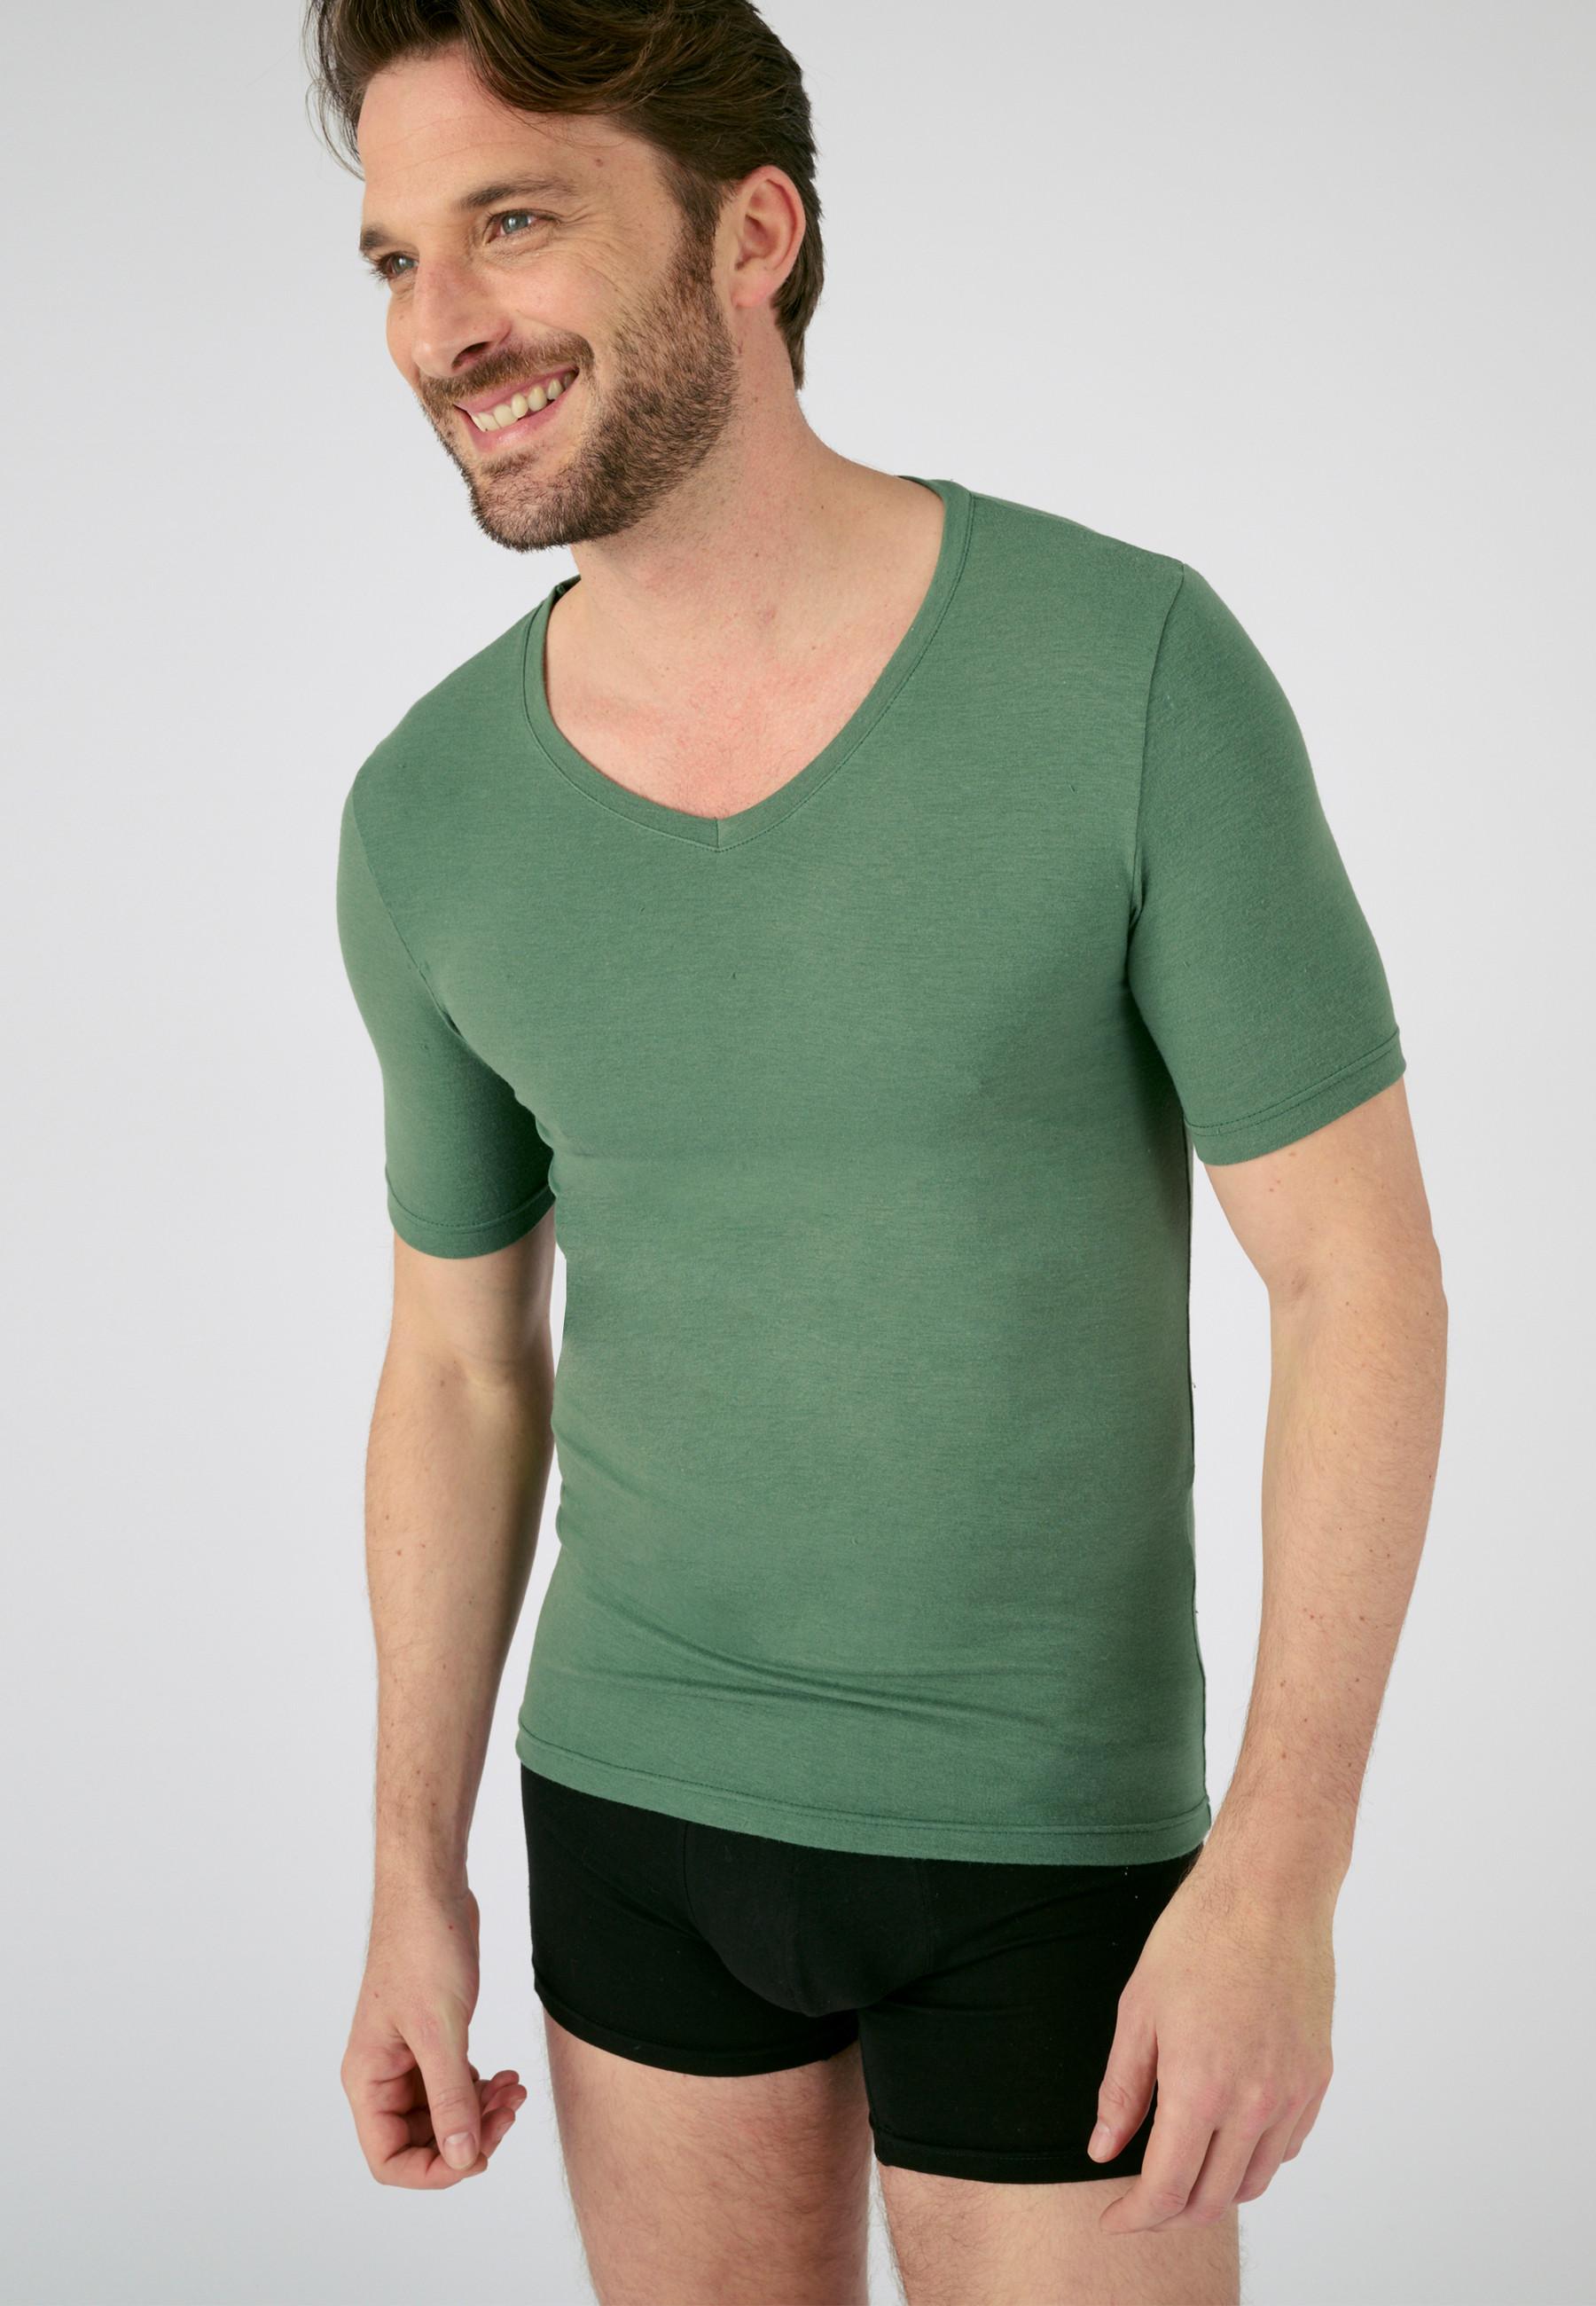 Damart  Jersey-T-Shirt aus Thermolactyl Sensitive, Wärmegrad Soft 2. 